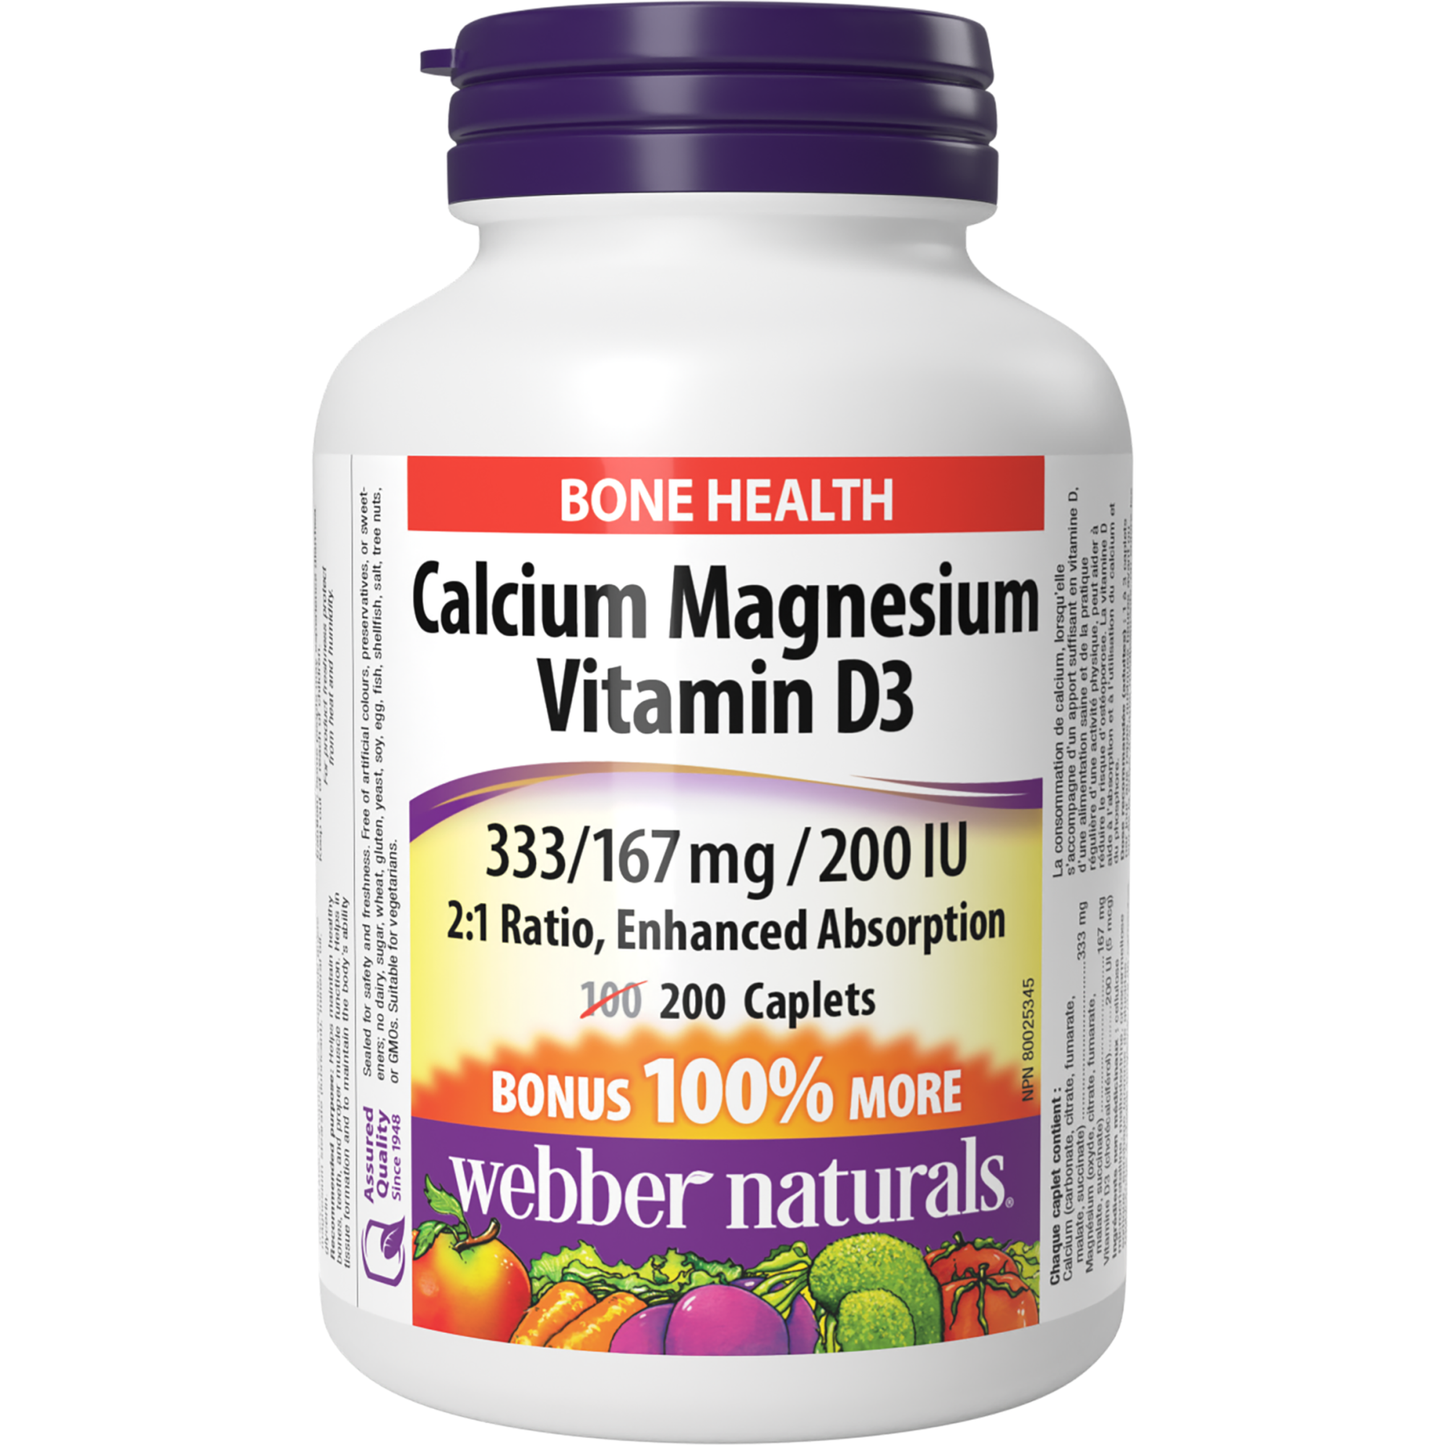 Calcium Magnesium Vitamin D3 2:1 Ratio, Enhanced Absorption 333/167 mg/200 IU for Webber Naturals|v|hi-res|WN3866